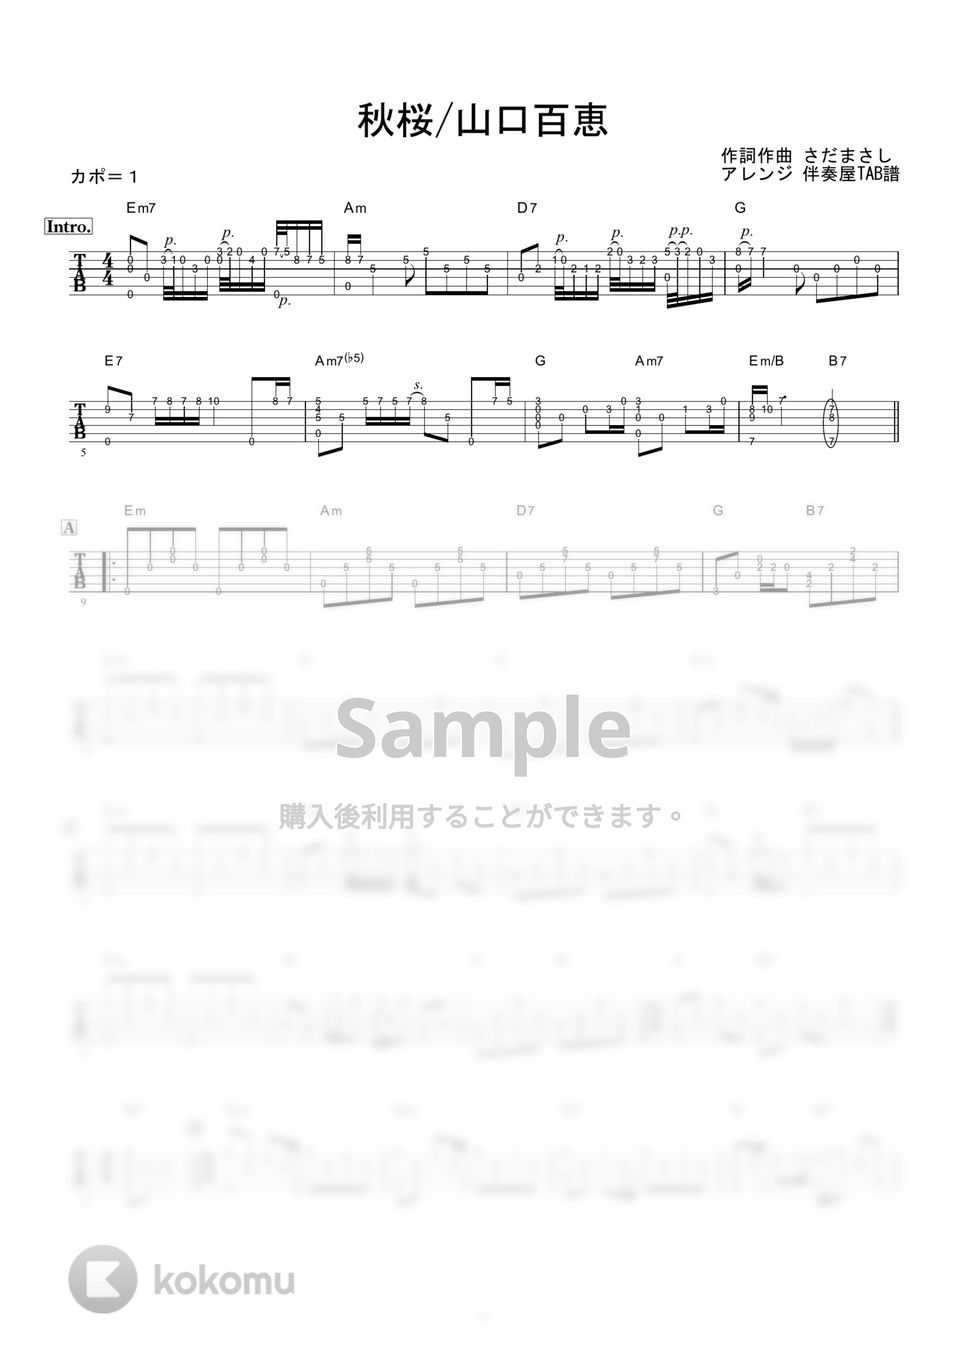 山口百恵 - 秋桜 (ギター伴奏/イントロ・間奏ソロギター) by 伴奏屋TAB譜